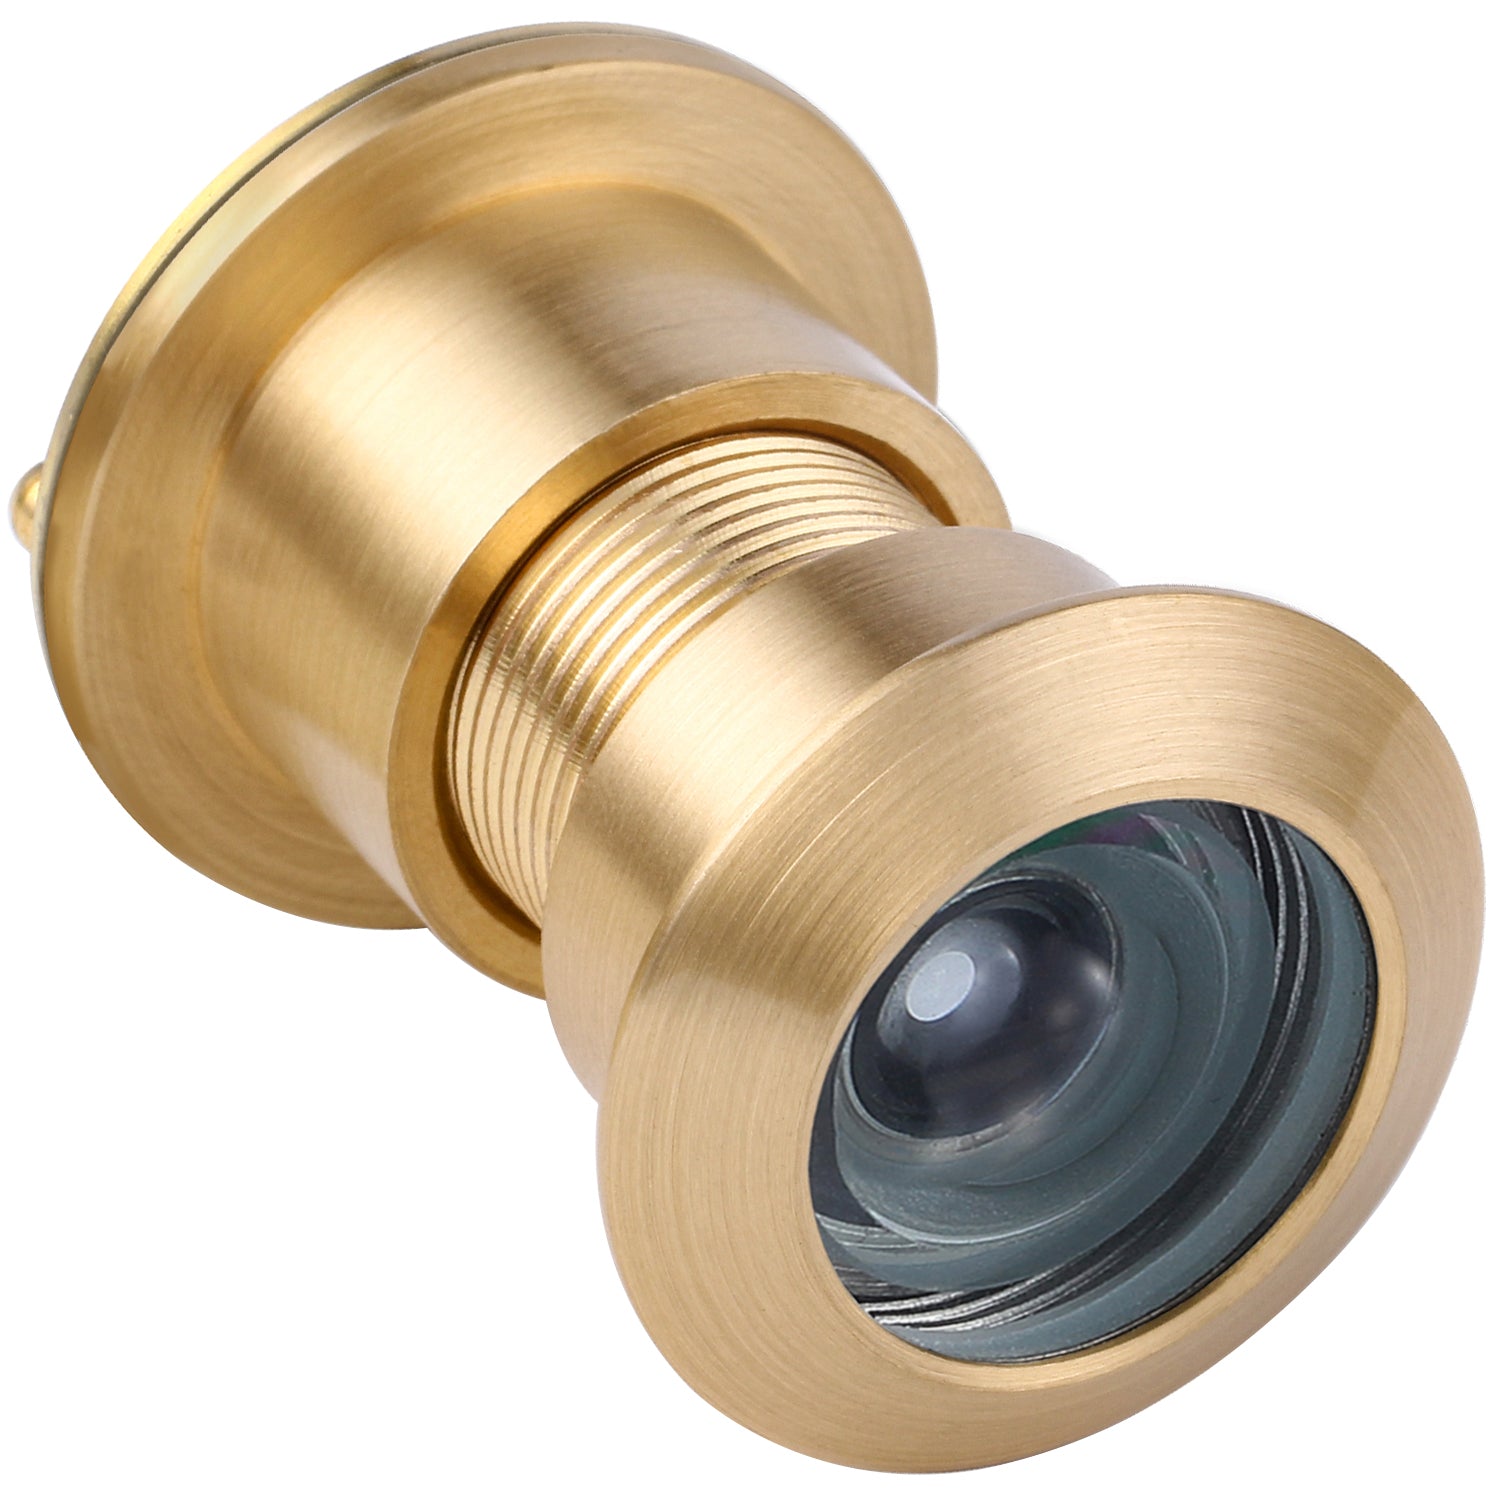 Solid Brass Security Peek Peepholes for Front Door - Gold